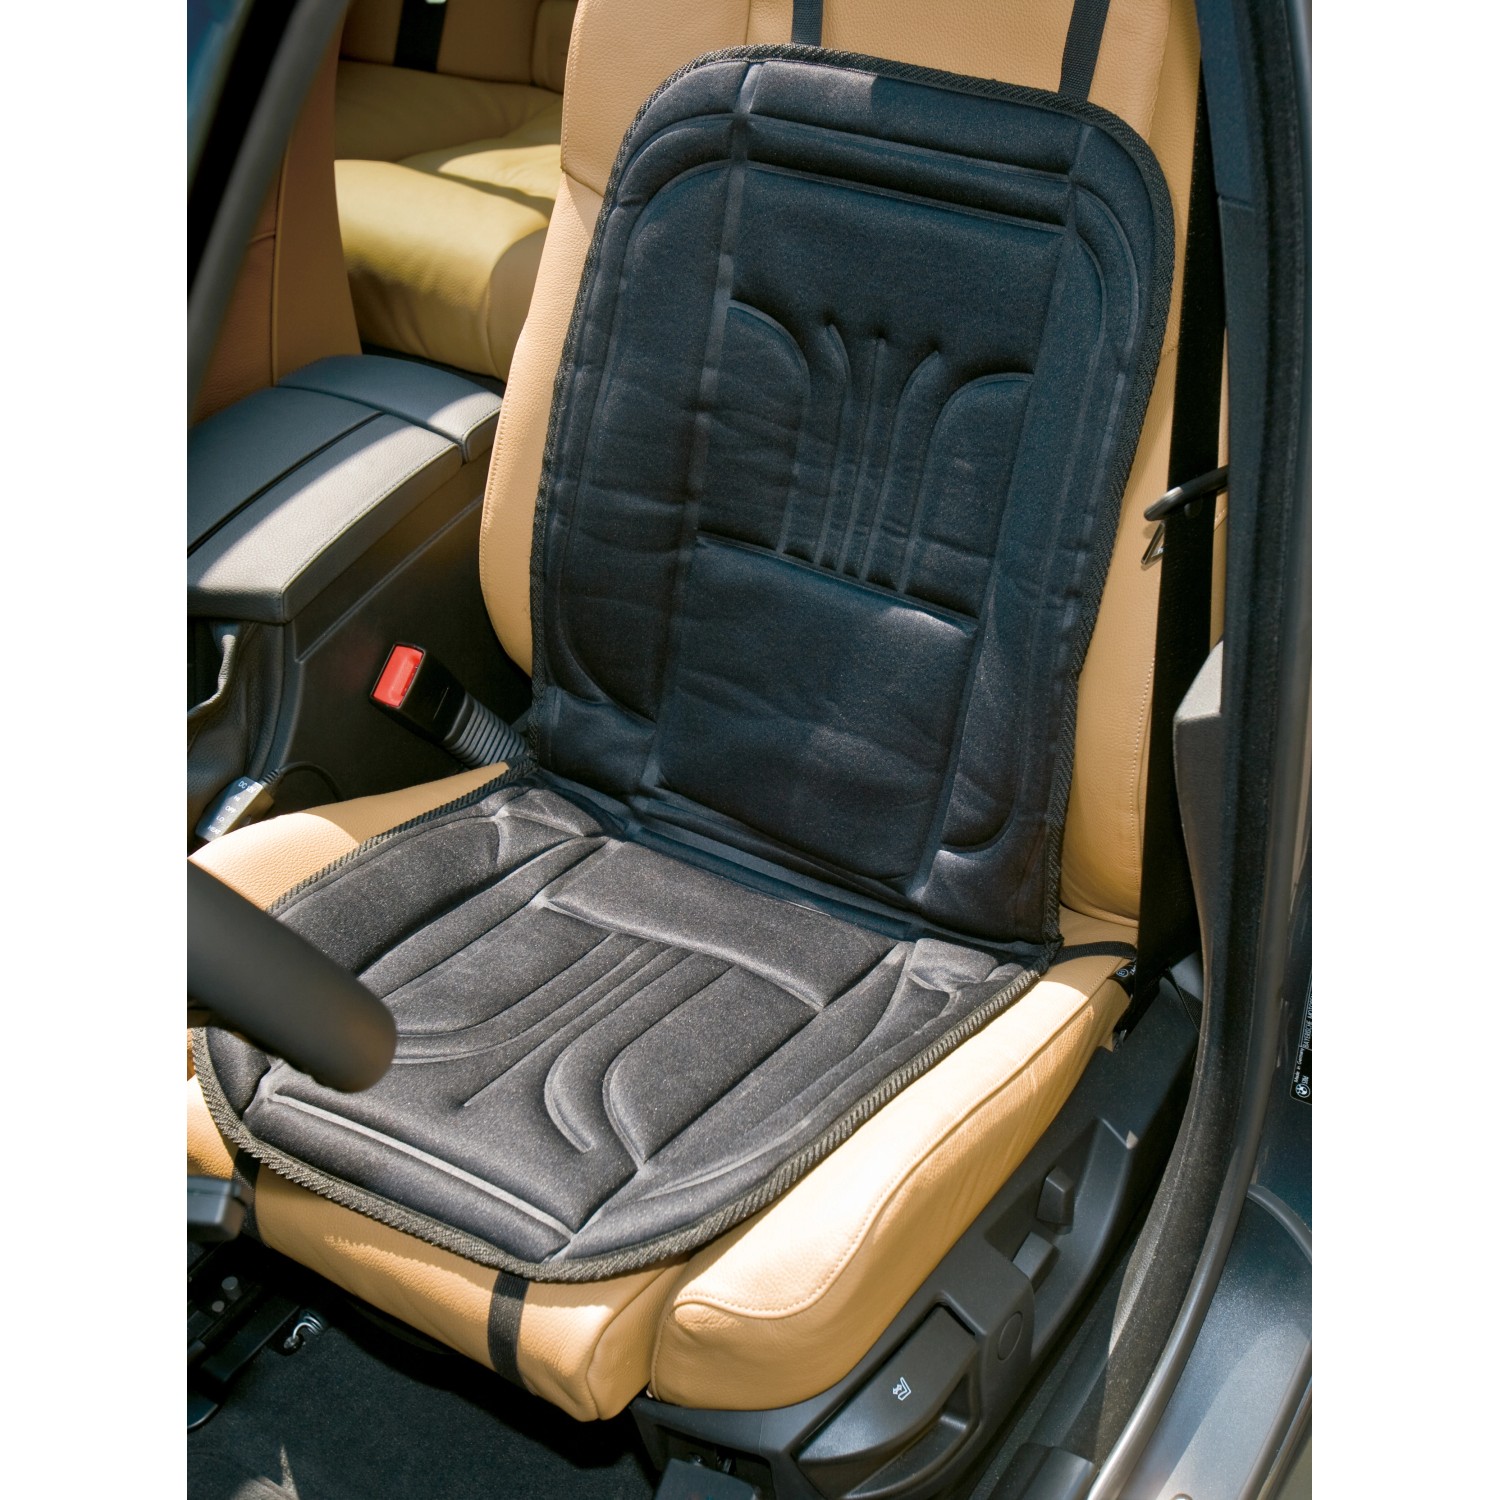 Cartrend Sitzheizung Turbo Plus Sitz- und Rückenfläche 12 V kaufen bei OBI